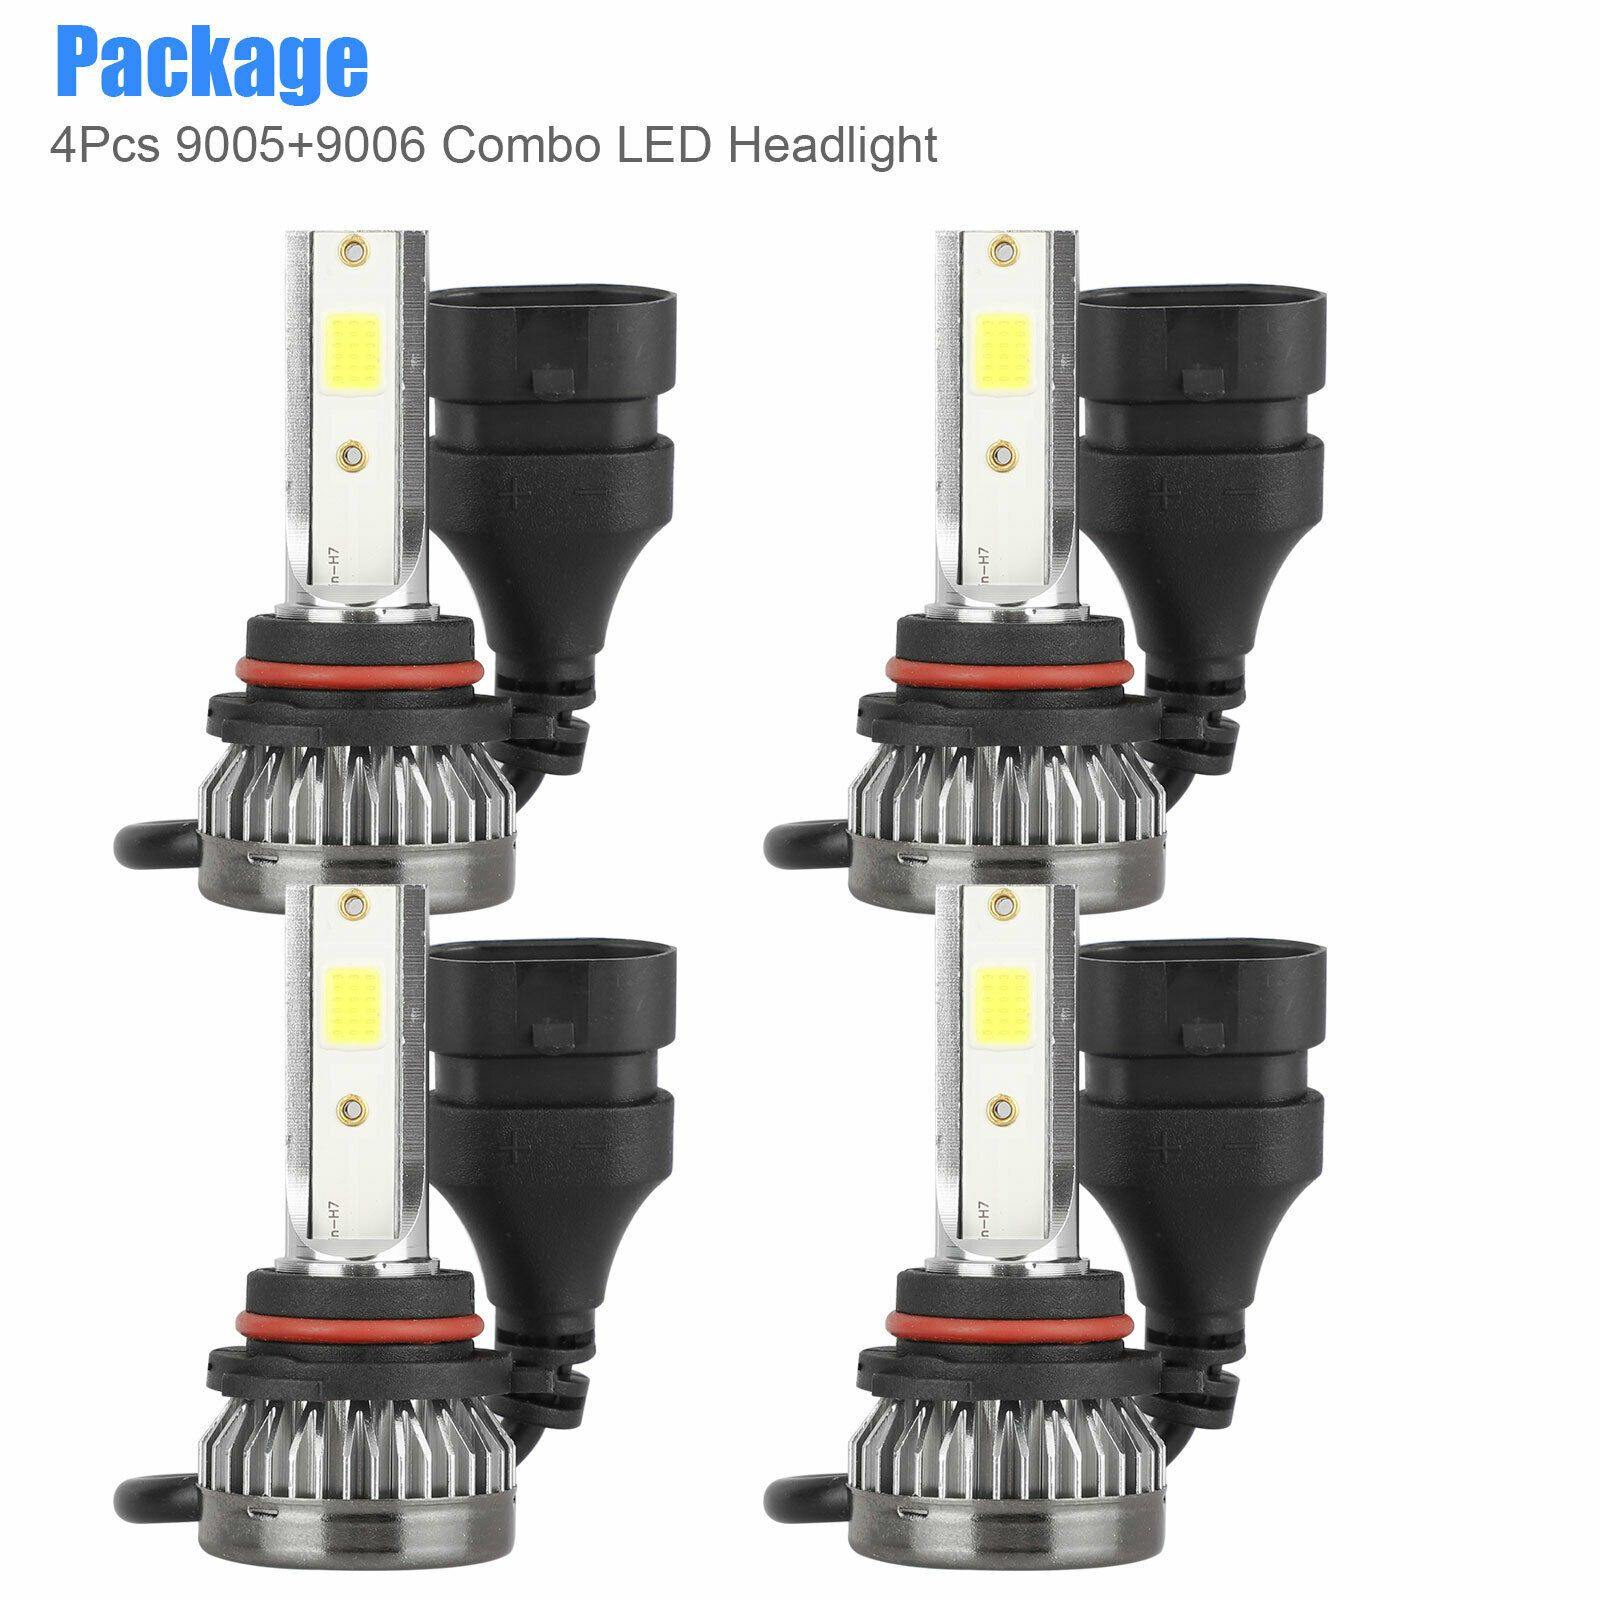 4PCS 9005 9006 Super White COB LED Combo Headlight Bulbs High Low Beam Kit 6000K - KinglyDay